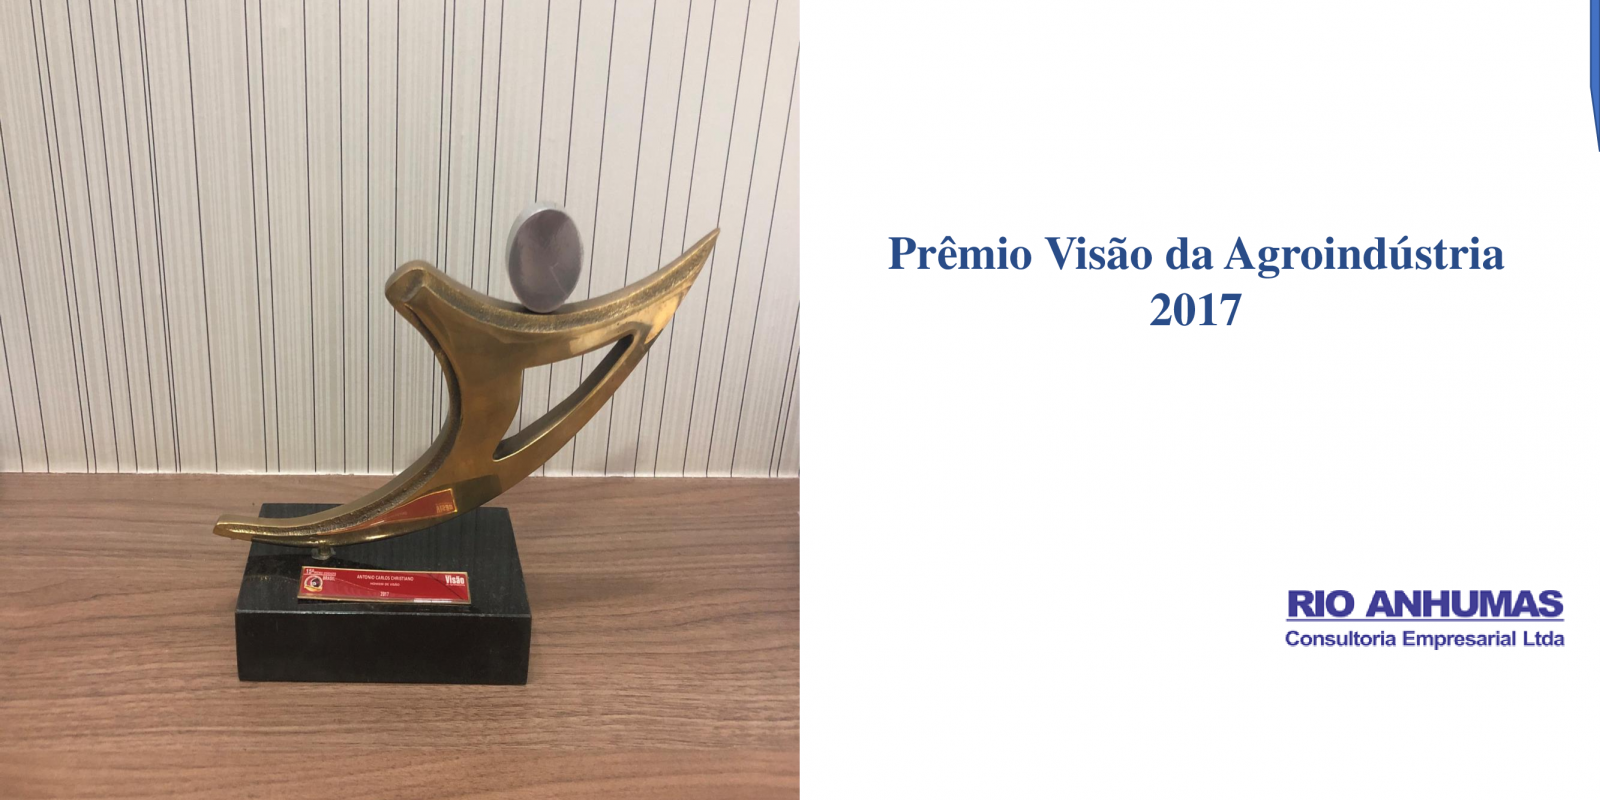 Prêmio Visão da Agroindústria - 2017